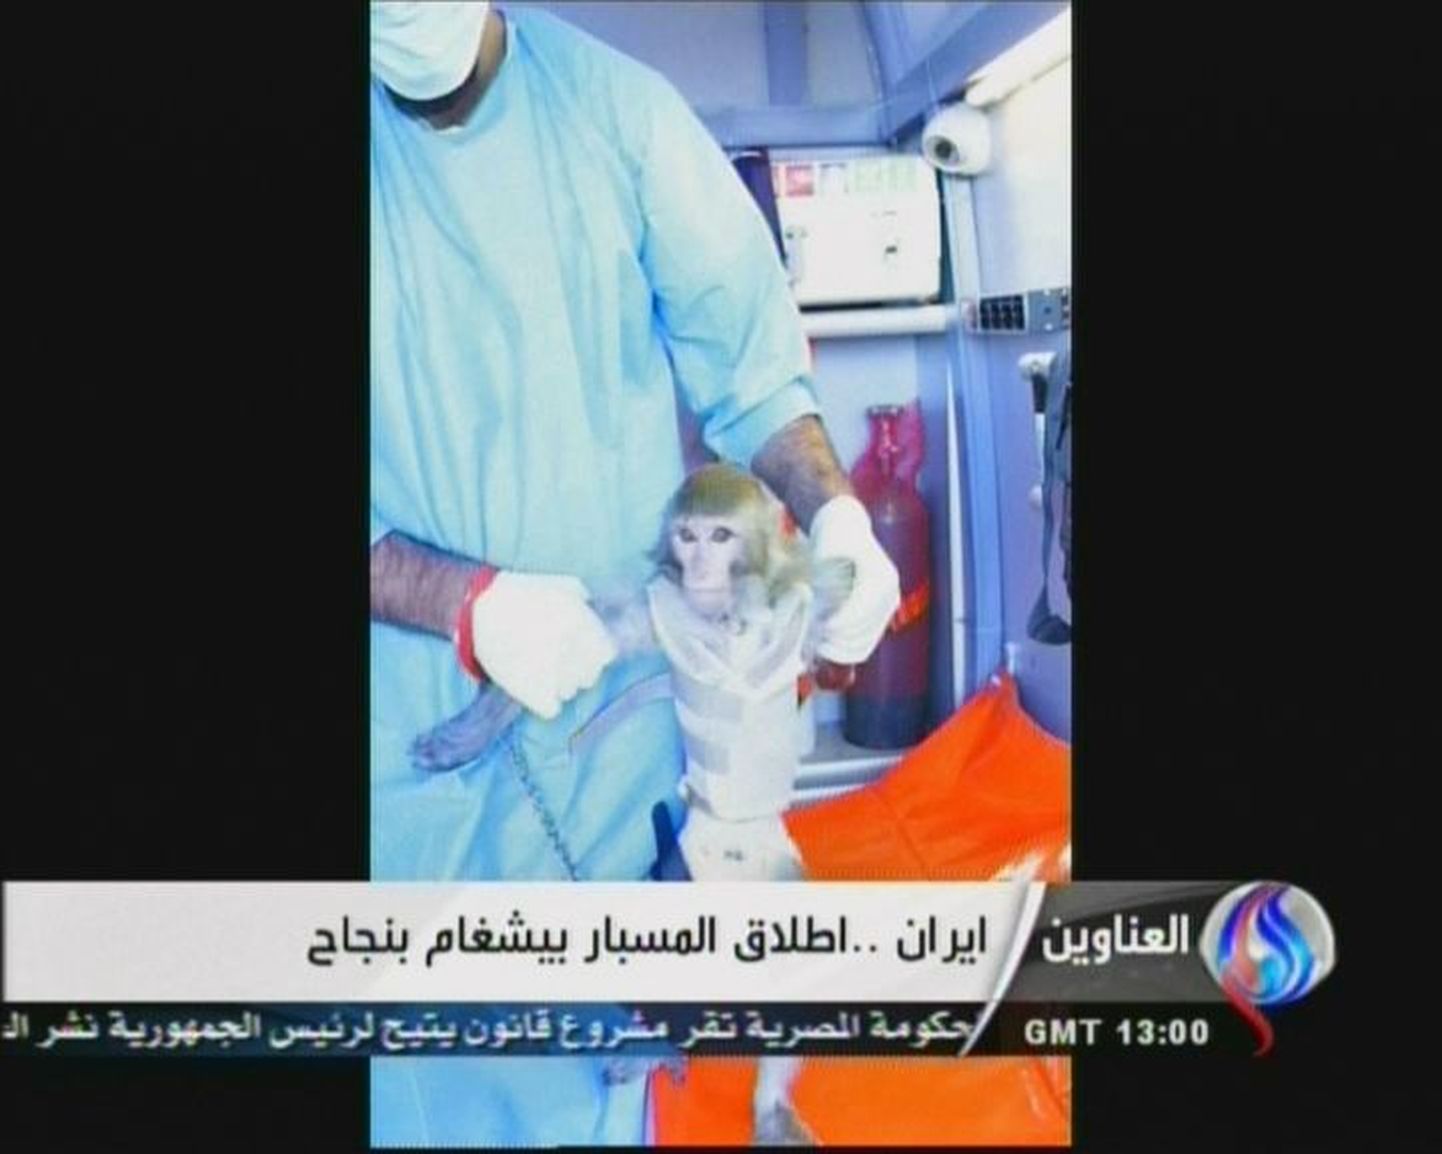 Iraani telekanali Al-Alam kaader ahvist, kes kosmoses käis ja elusana naasis.